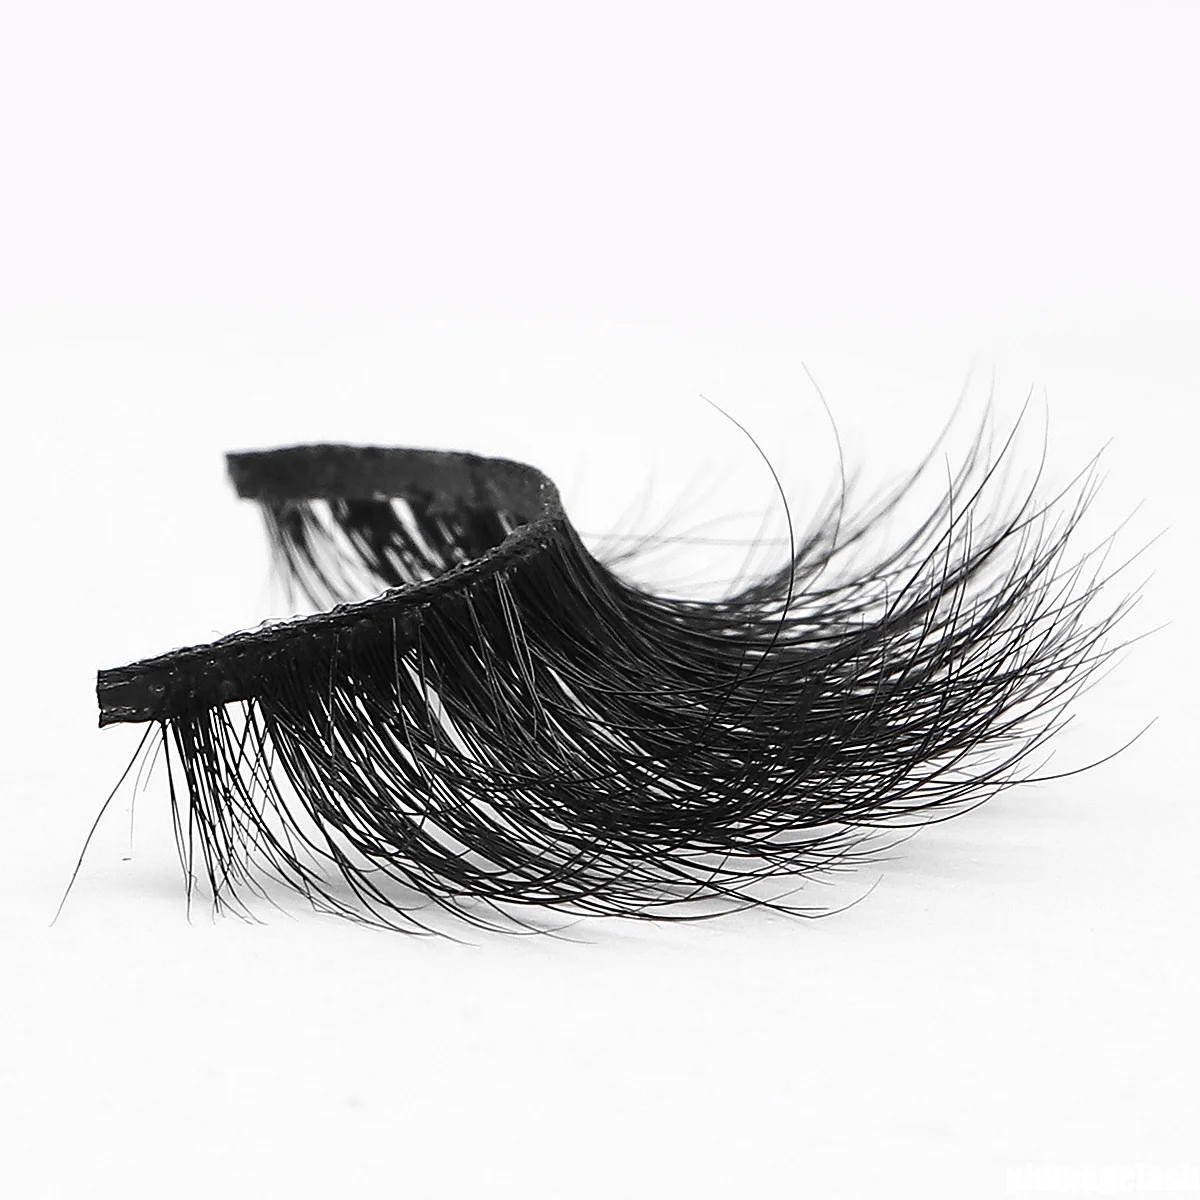 Wholesale beauty supply mink eyelashes manufacturer